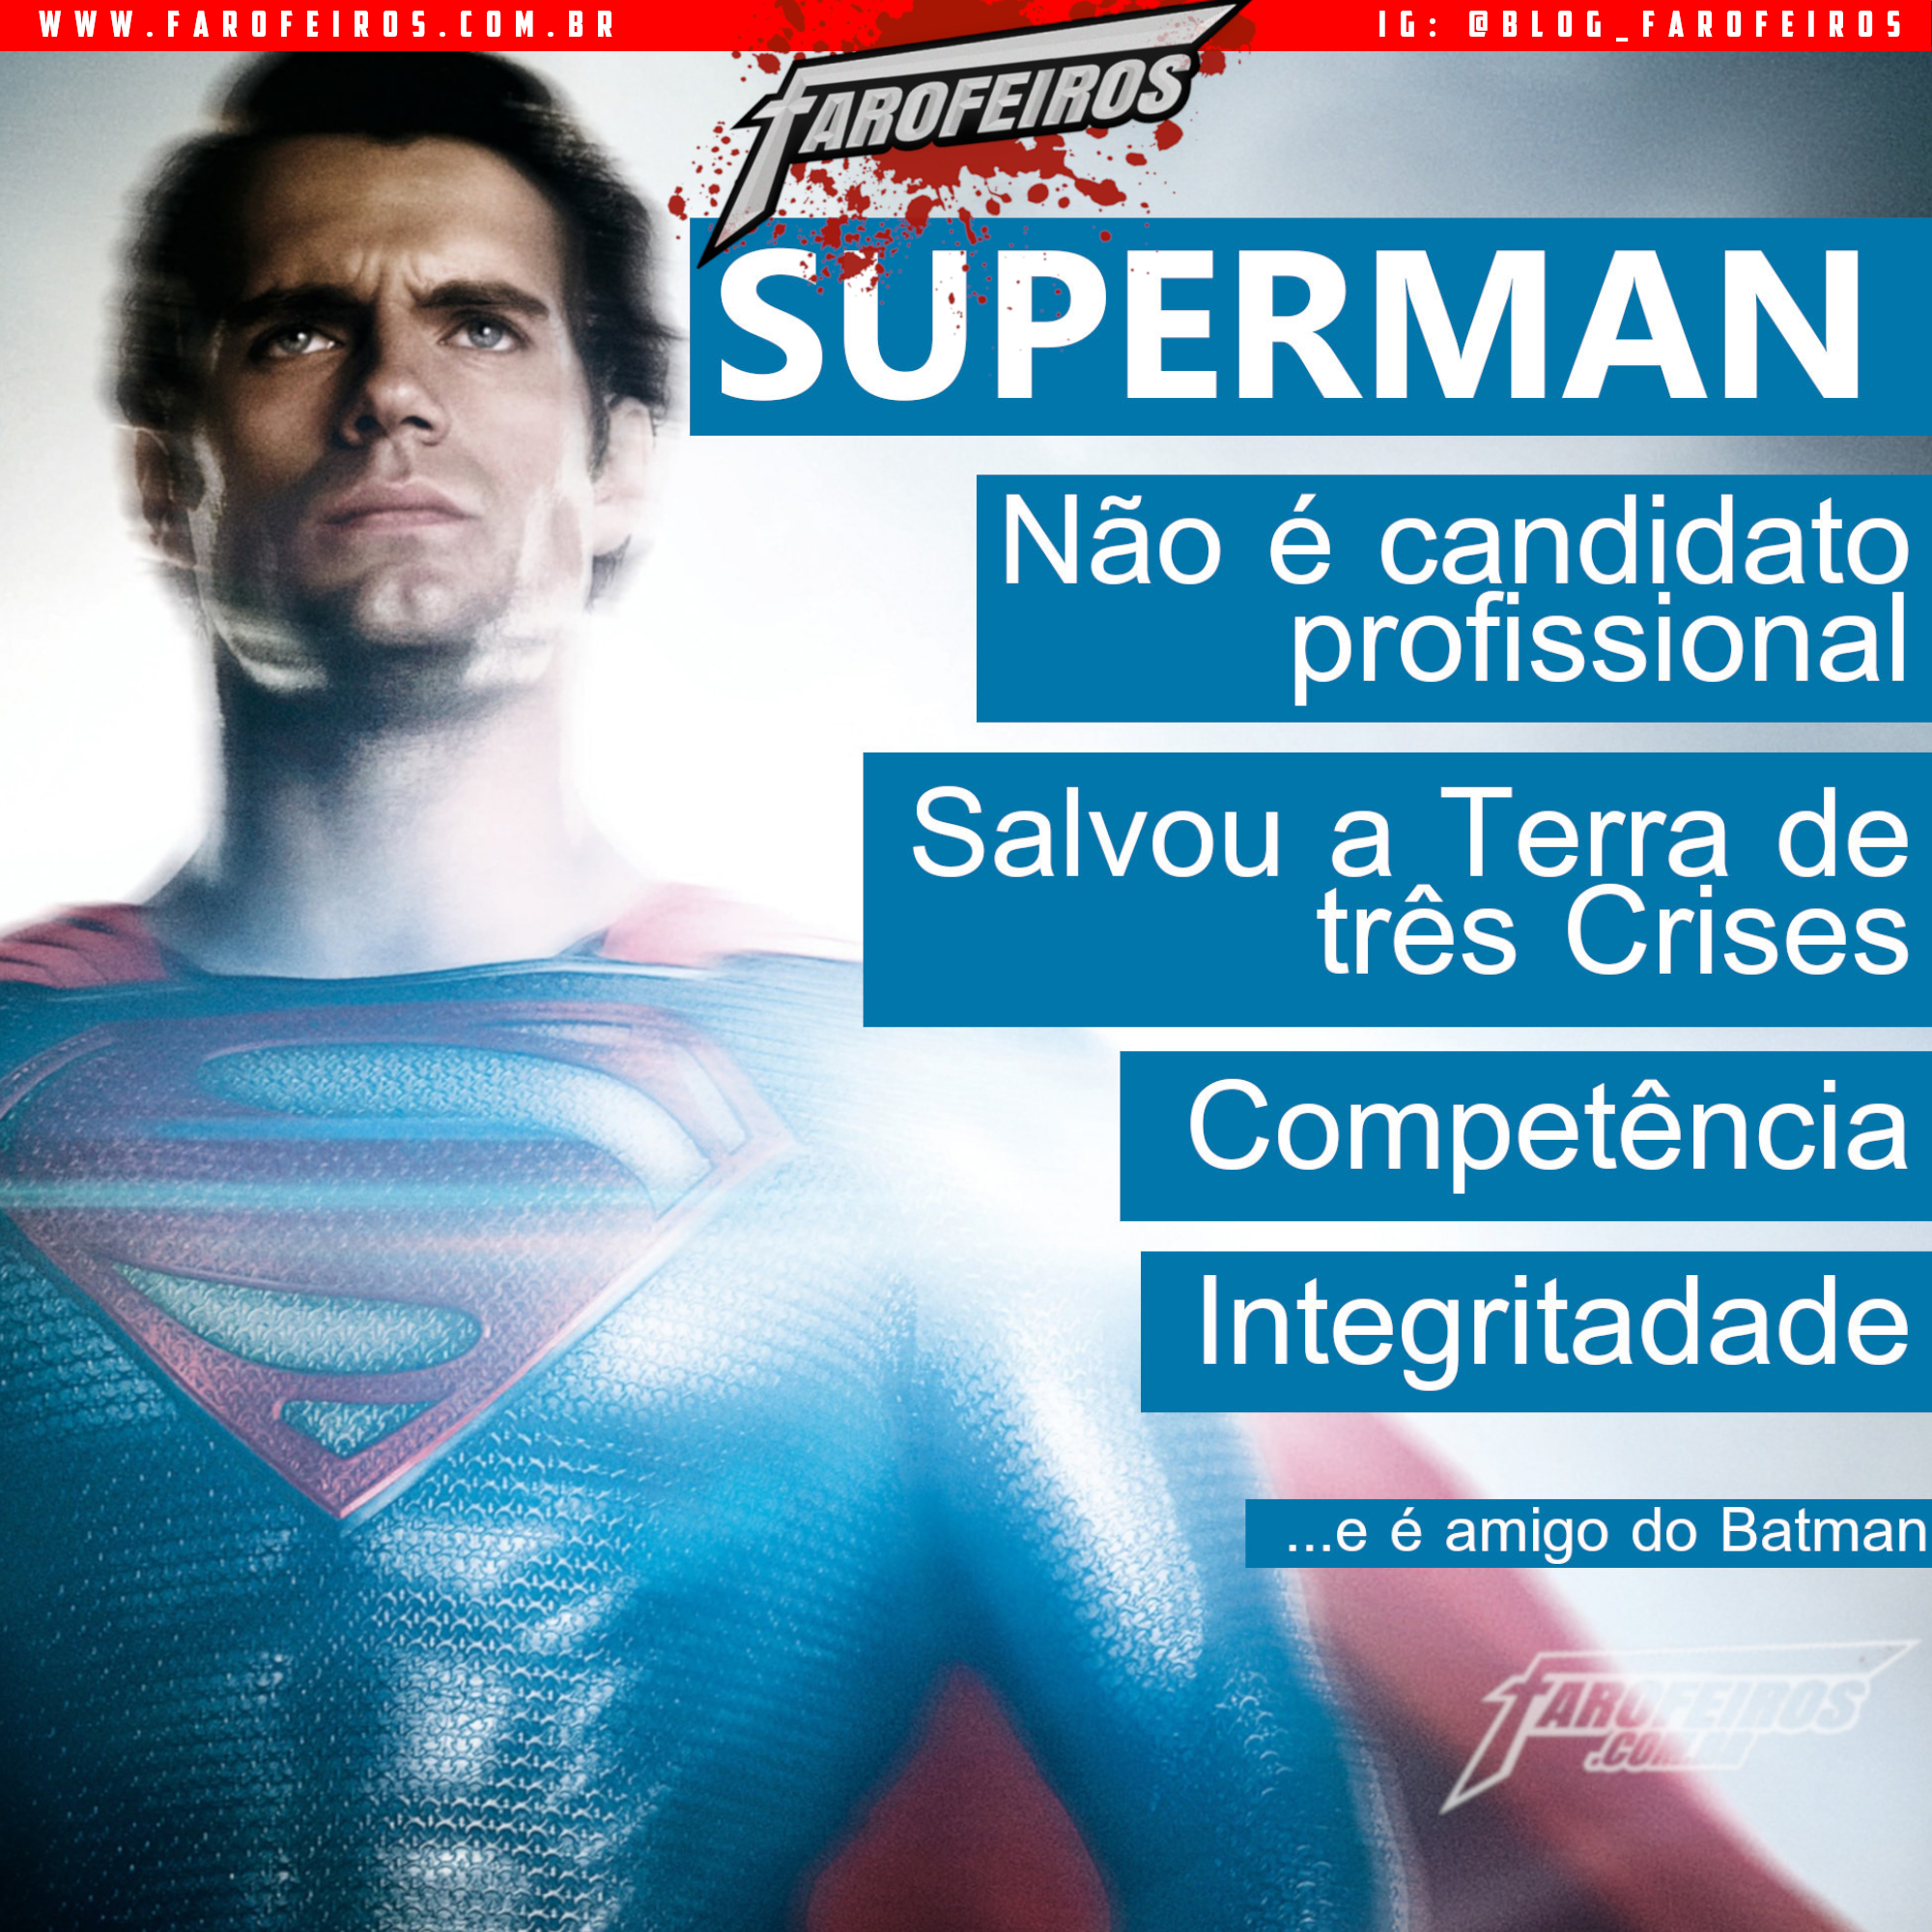 Super Eleições 2018 - Farofeiros com br - Superman